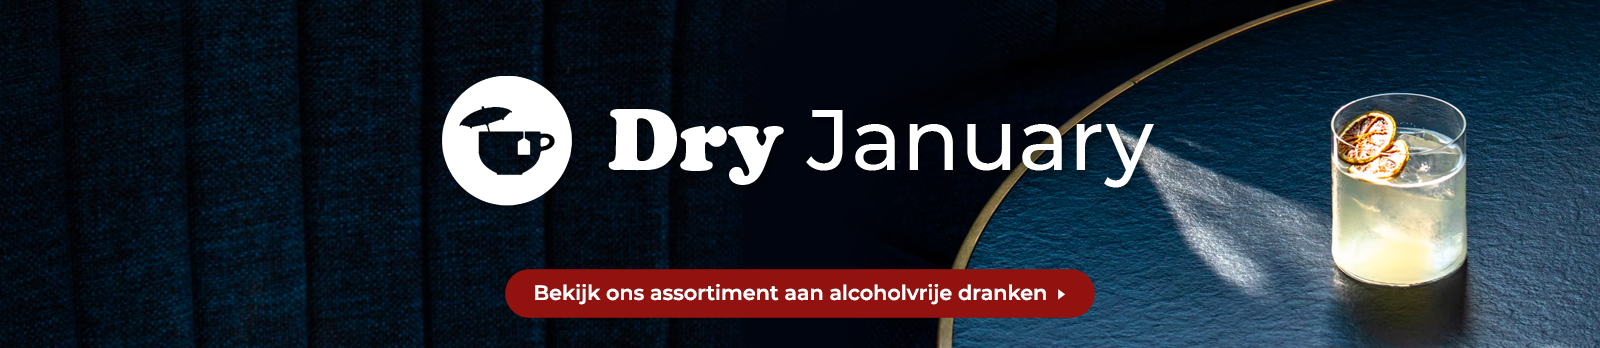 NL_DryJanuary_v3